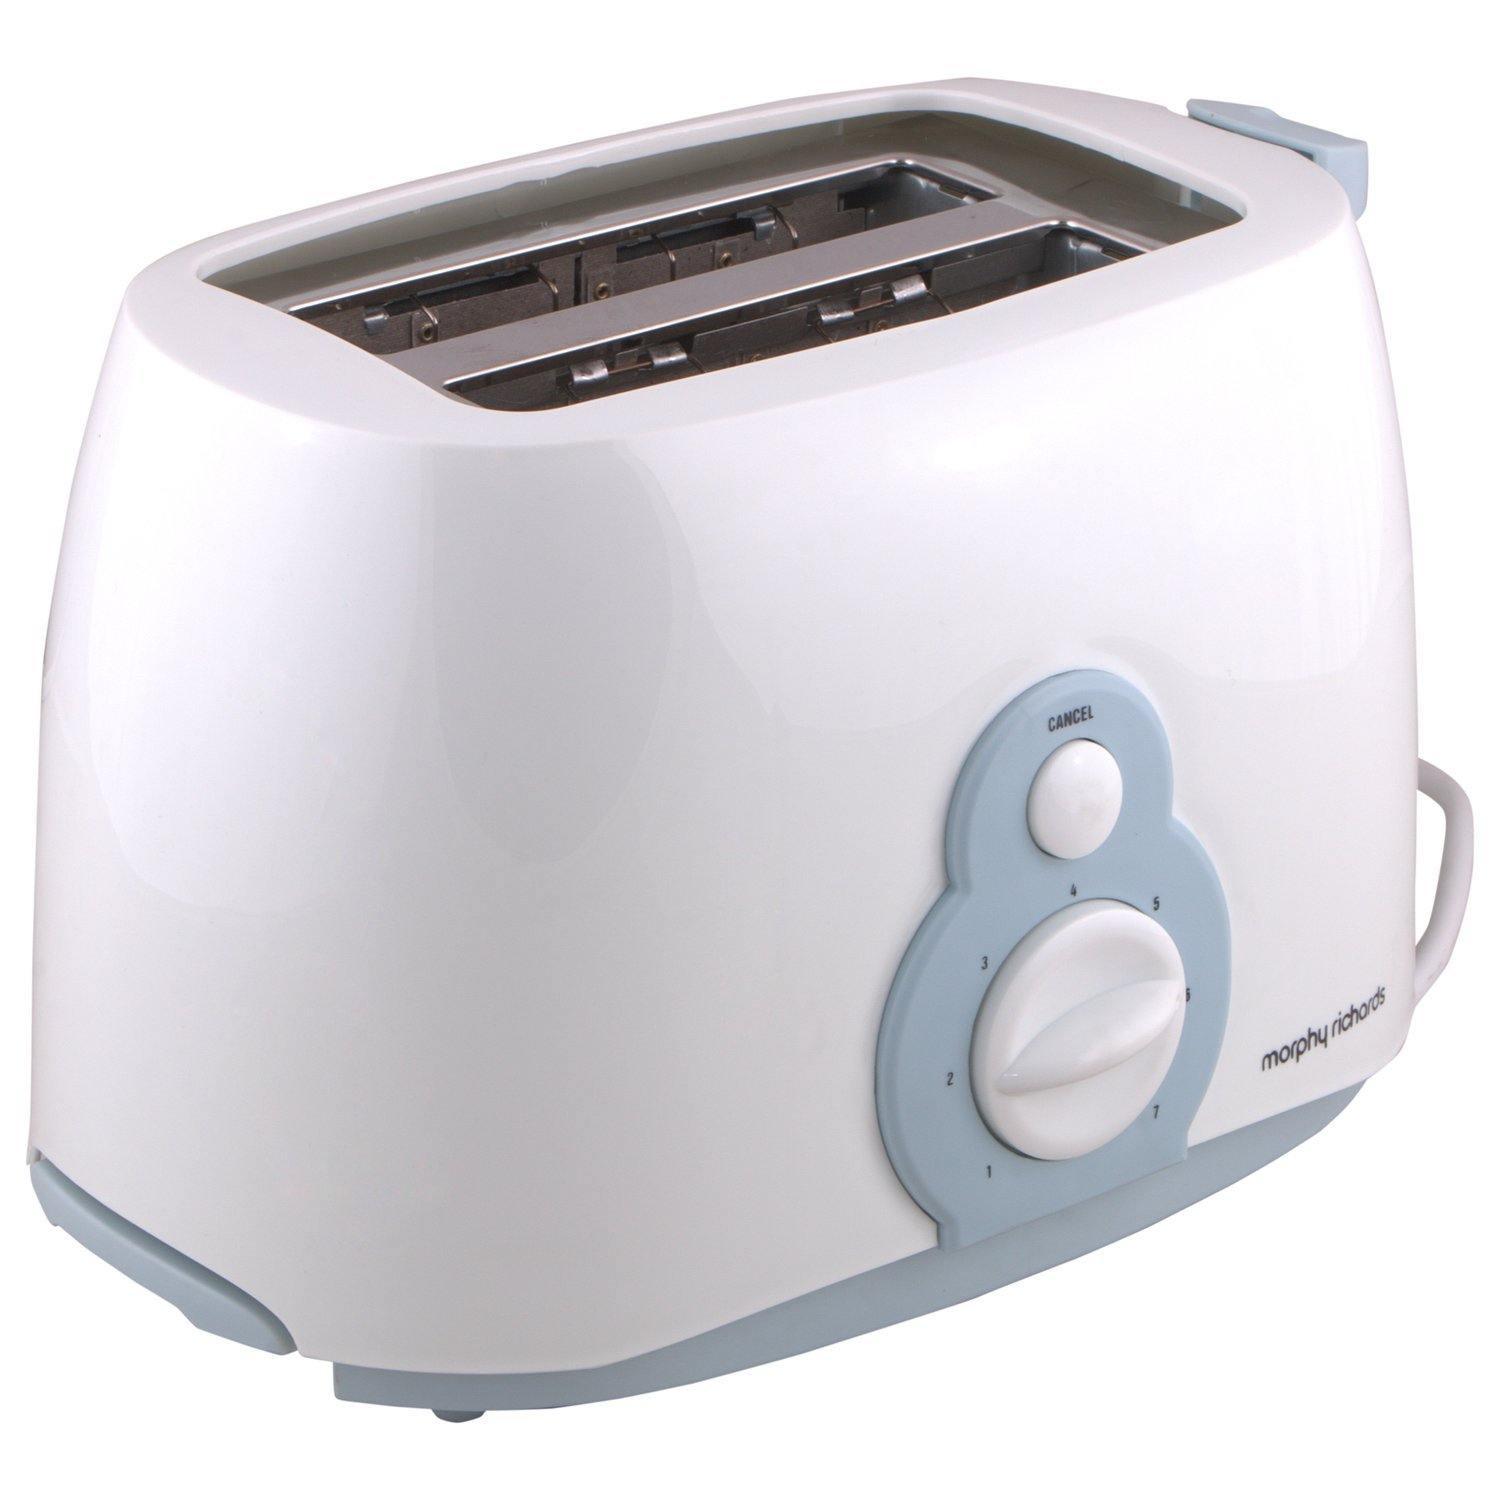 Morphy Richards at 202 2-Slice Pop-up Toaster-Home & Kitchen Appliances-dealsplant